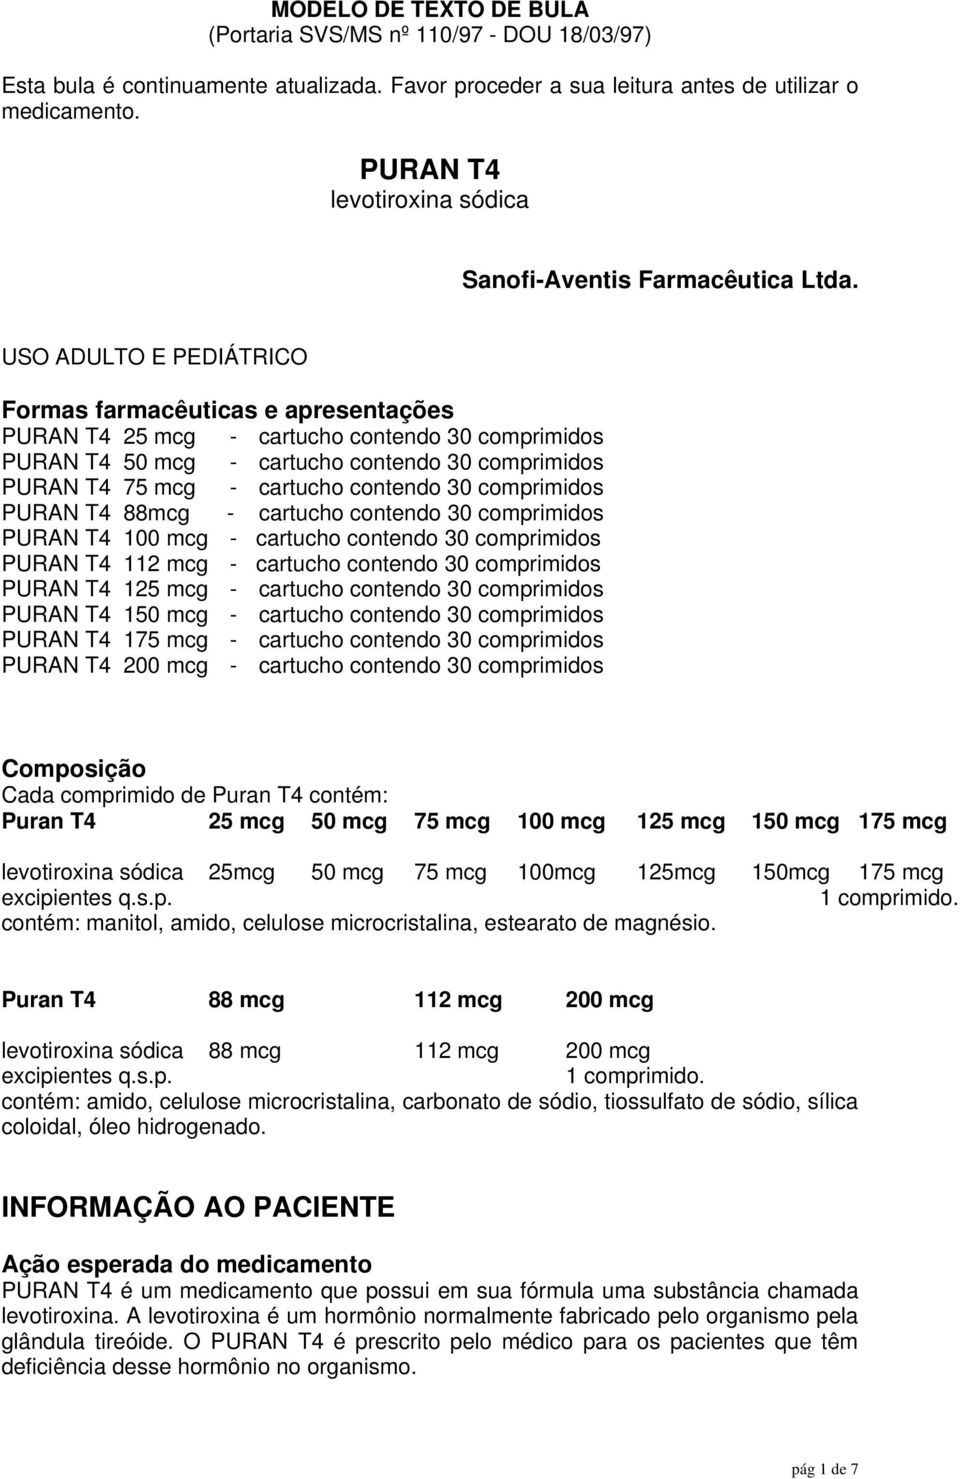 USO ADULTO E PEDIÁTRICO Formas farmacêuticas e apresentações PURAN T4 25 mcg - cartucho contendo 30 comprimidos PURAN T4 50 mcg - cartucho contendo 30 comprimidos PURAN T4 75 mcg - cartucho contendo